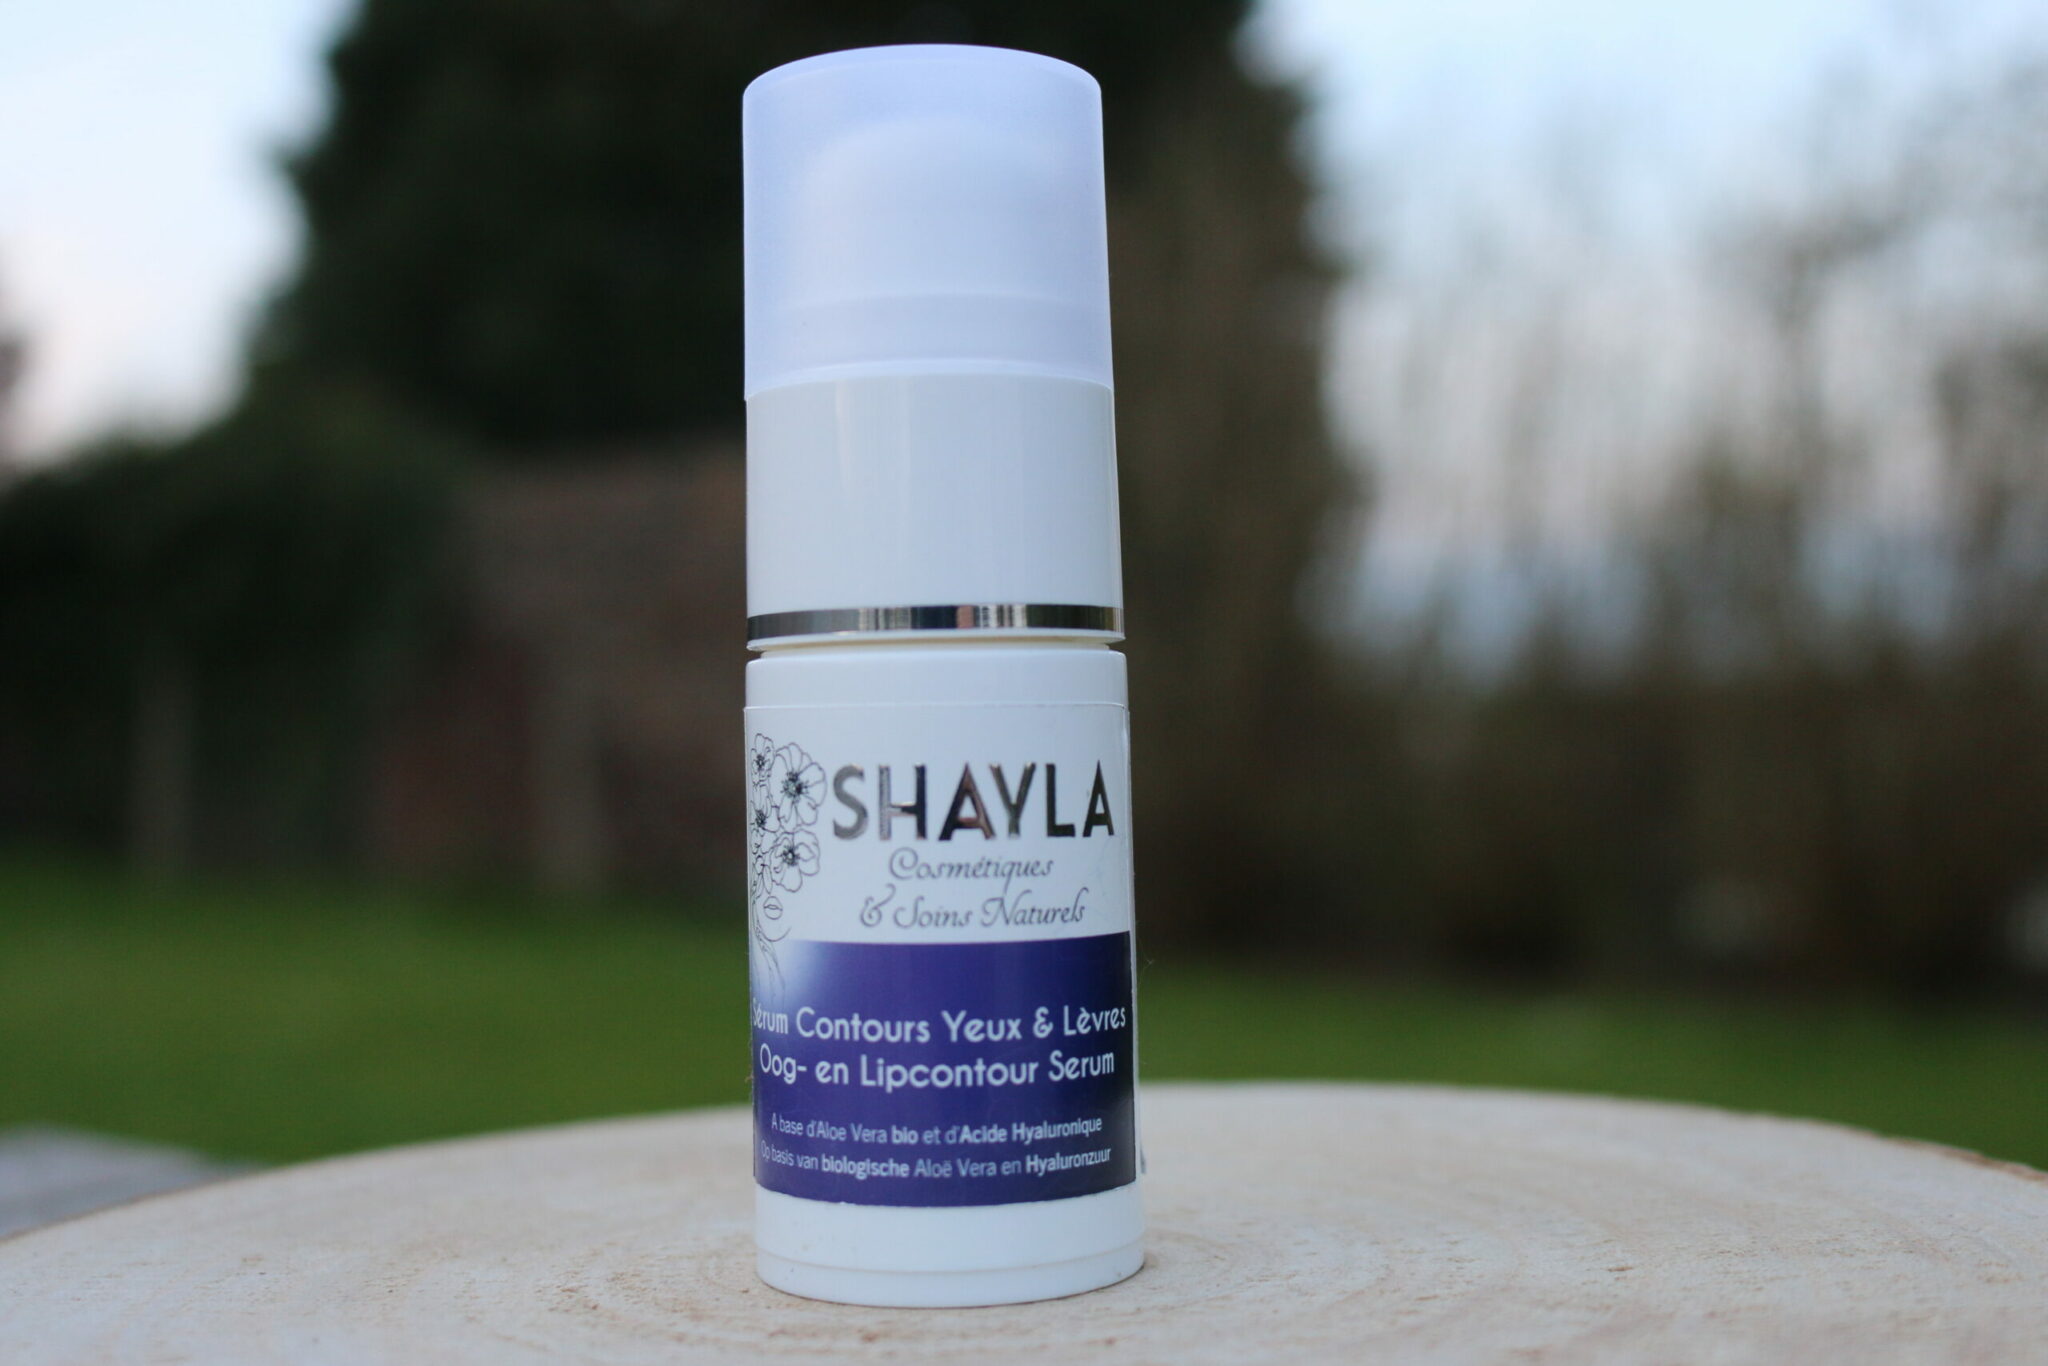 shayla-cosmetiques-et-soins-naturels-shayla-Belge-serum-pour-contours-yeux-et-levre-acide-haluronique-scaled-2048x1366-1.jpg